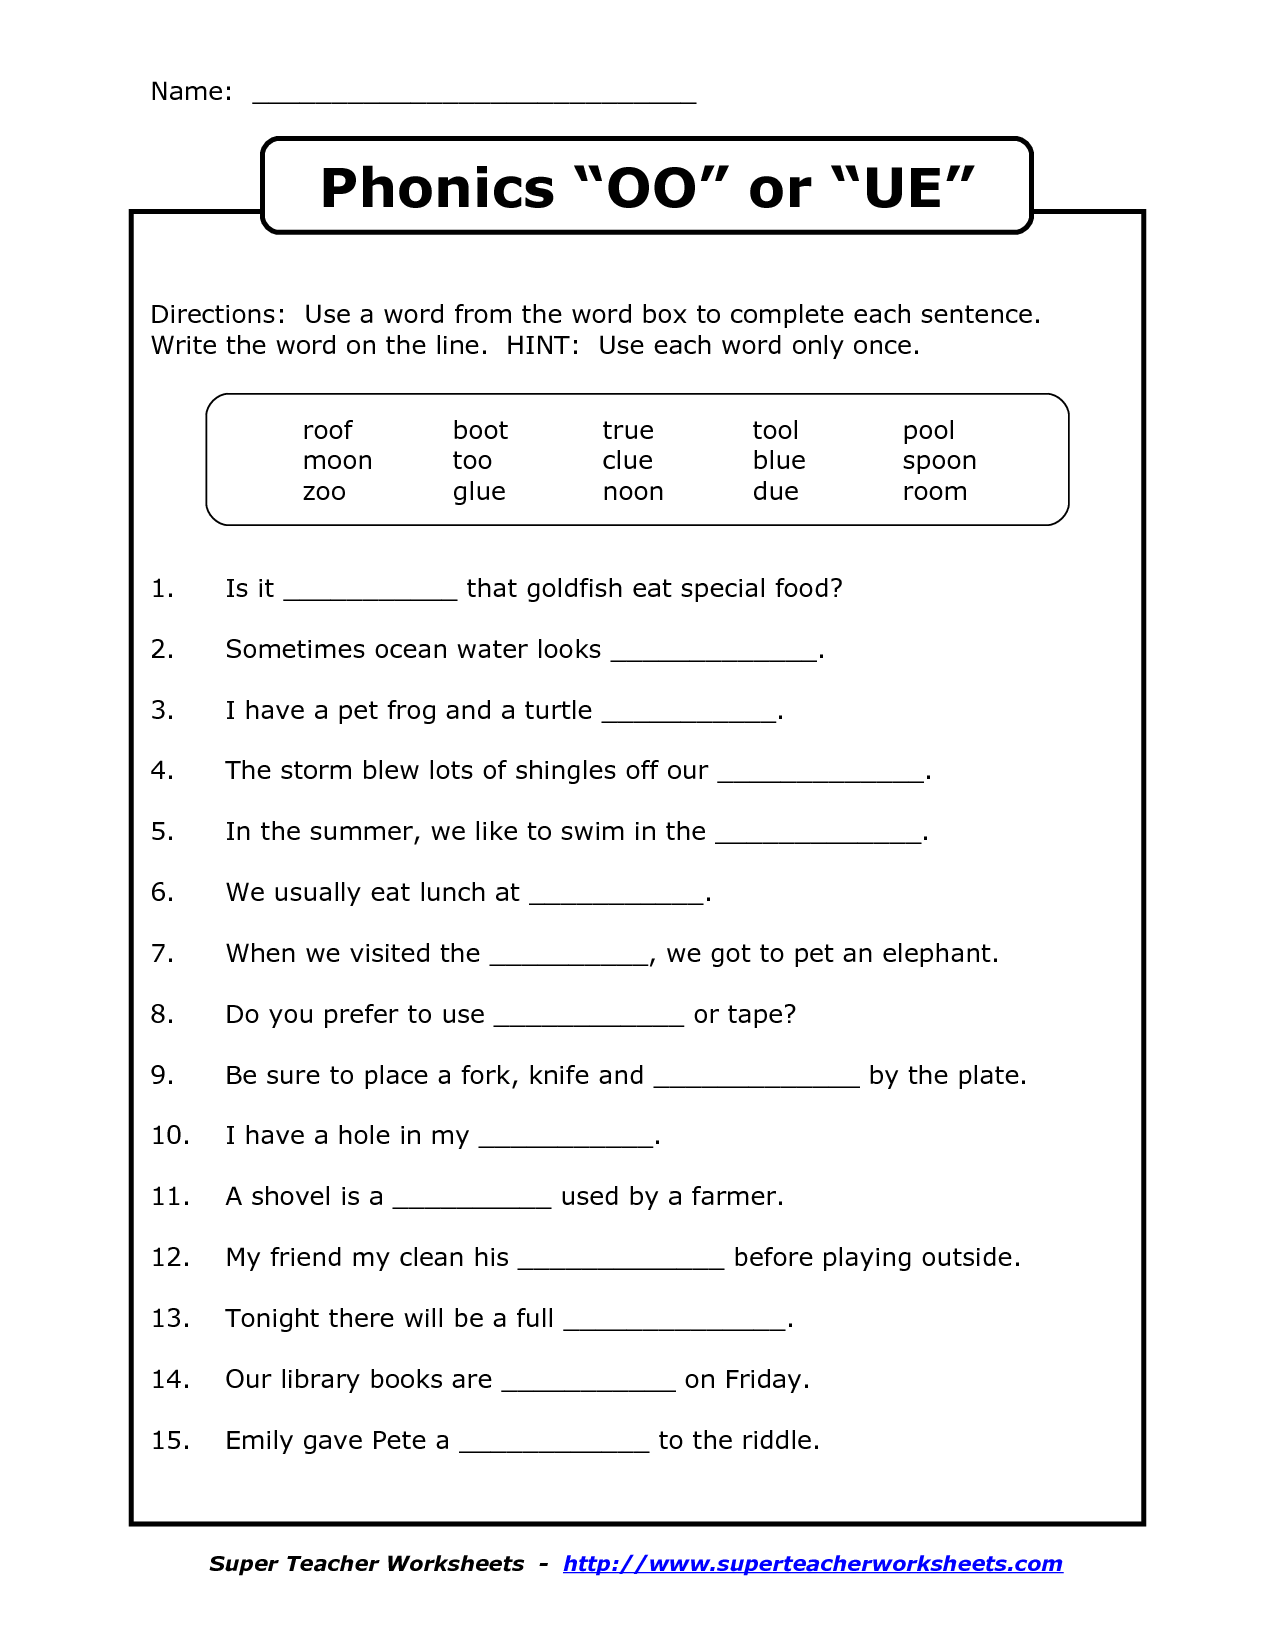 10 Best Images of Printable Oo Phonics Worksheets - Vowel Digraph Oo